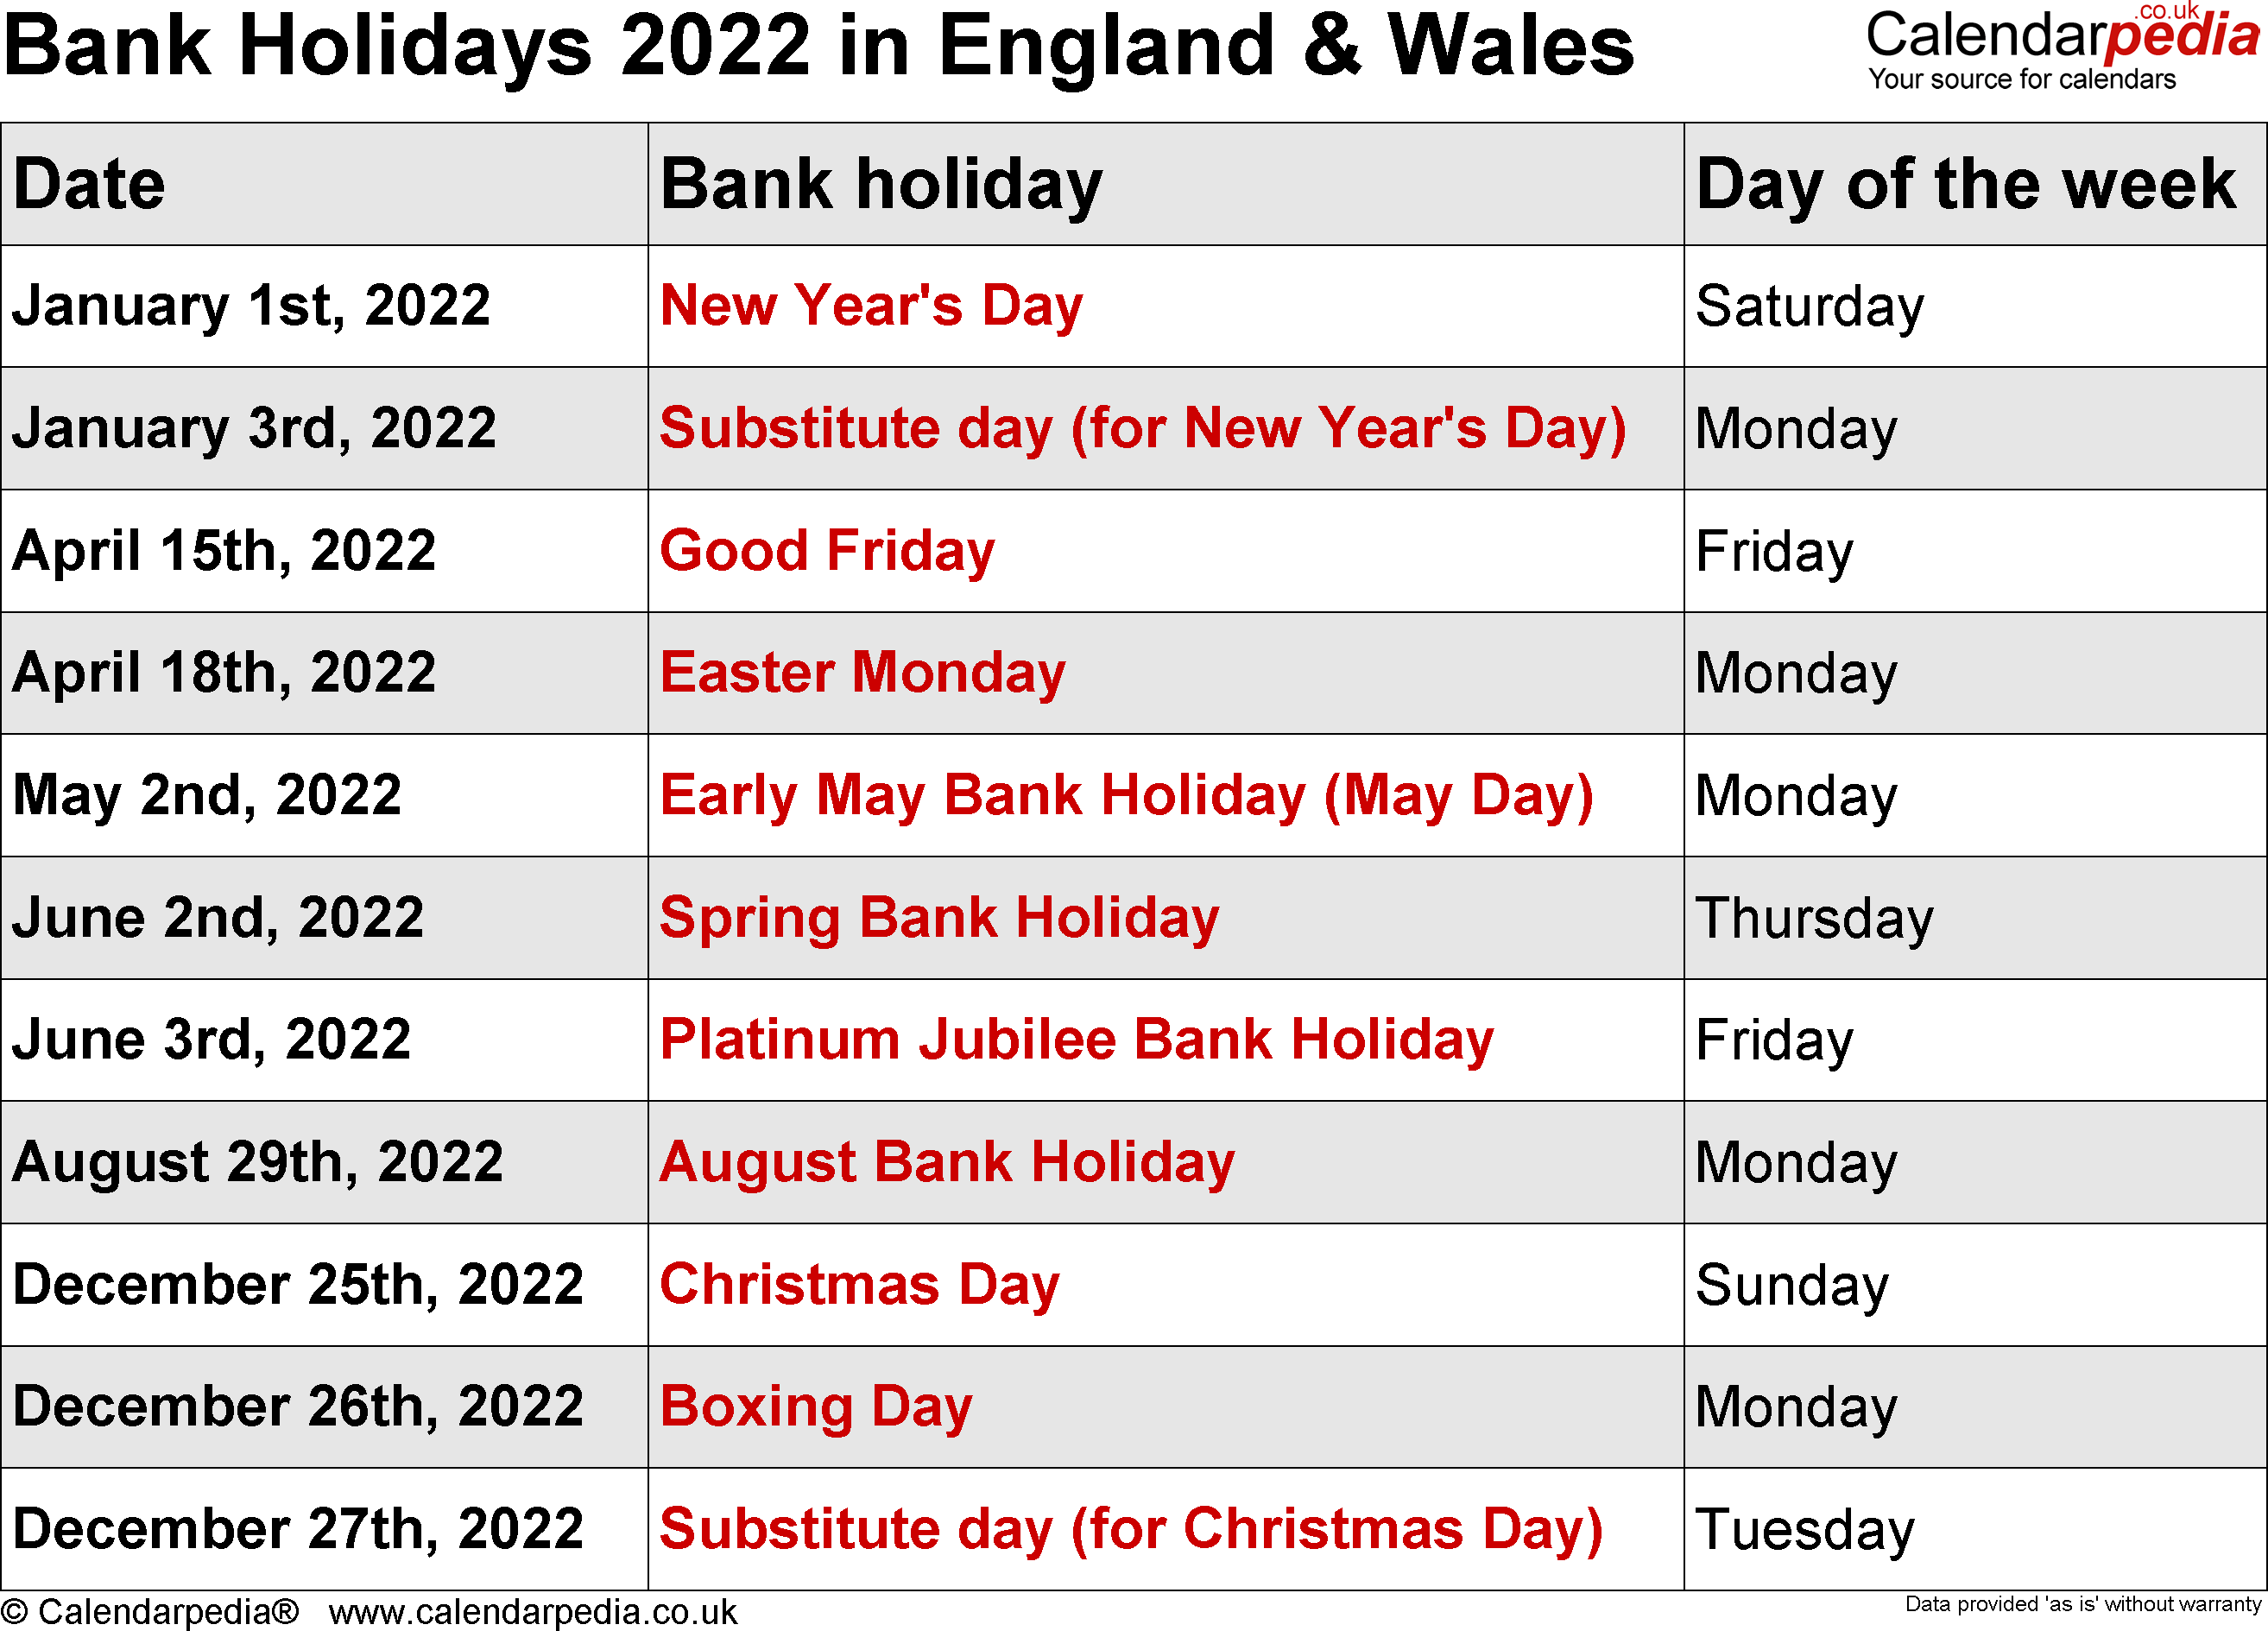 Christmas Day 2022